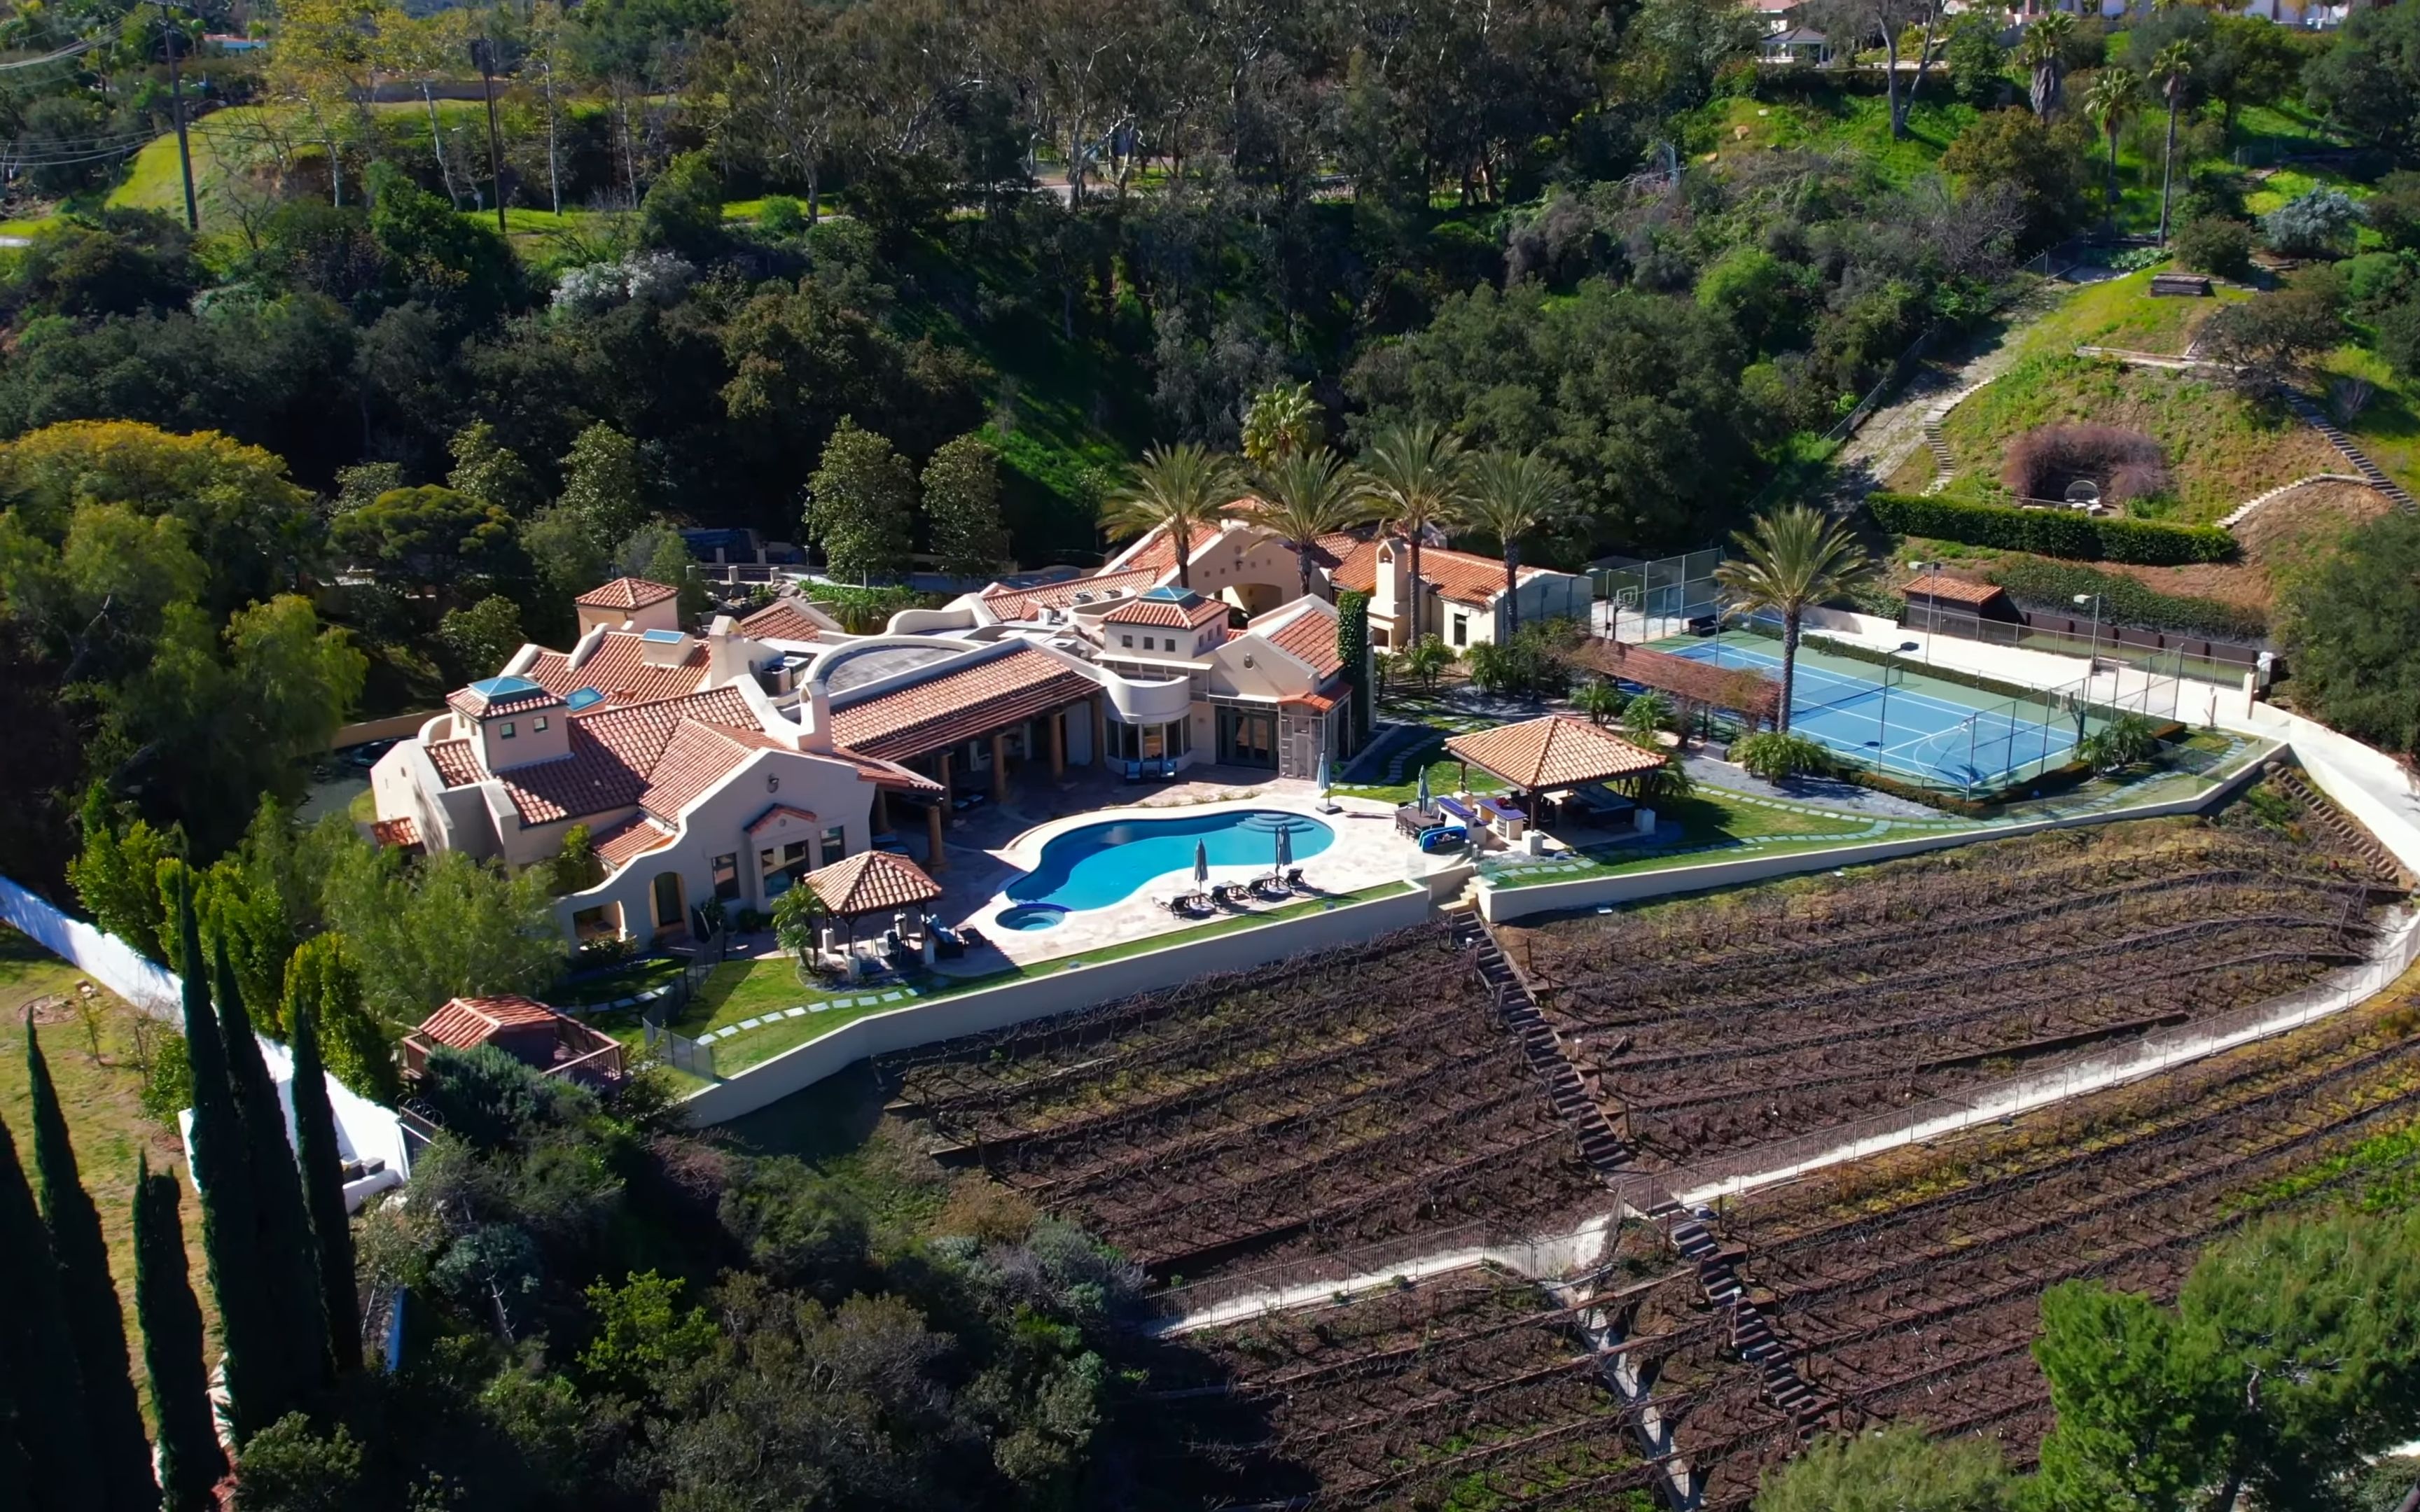 784 万美元,位于洛杉矶占地 7 英亩的完美私人庄园